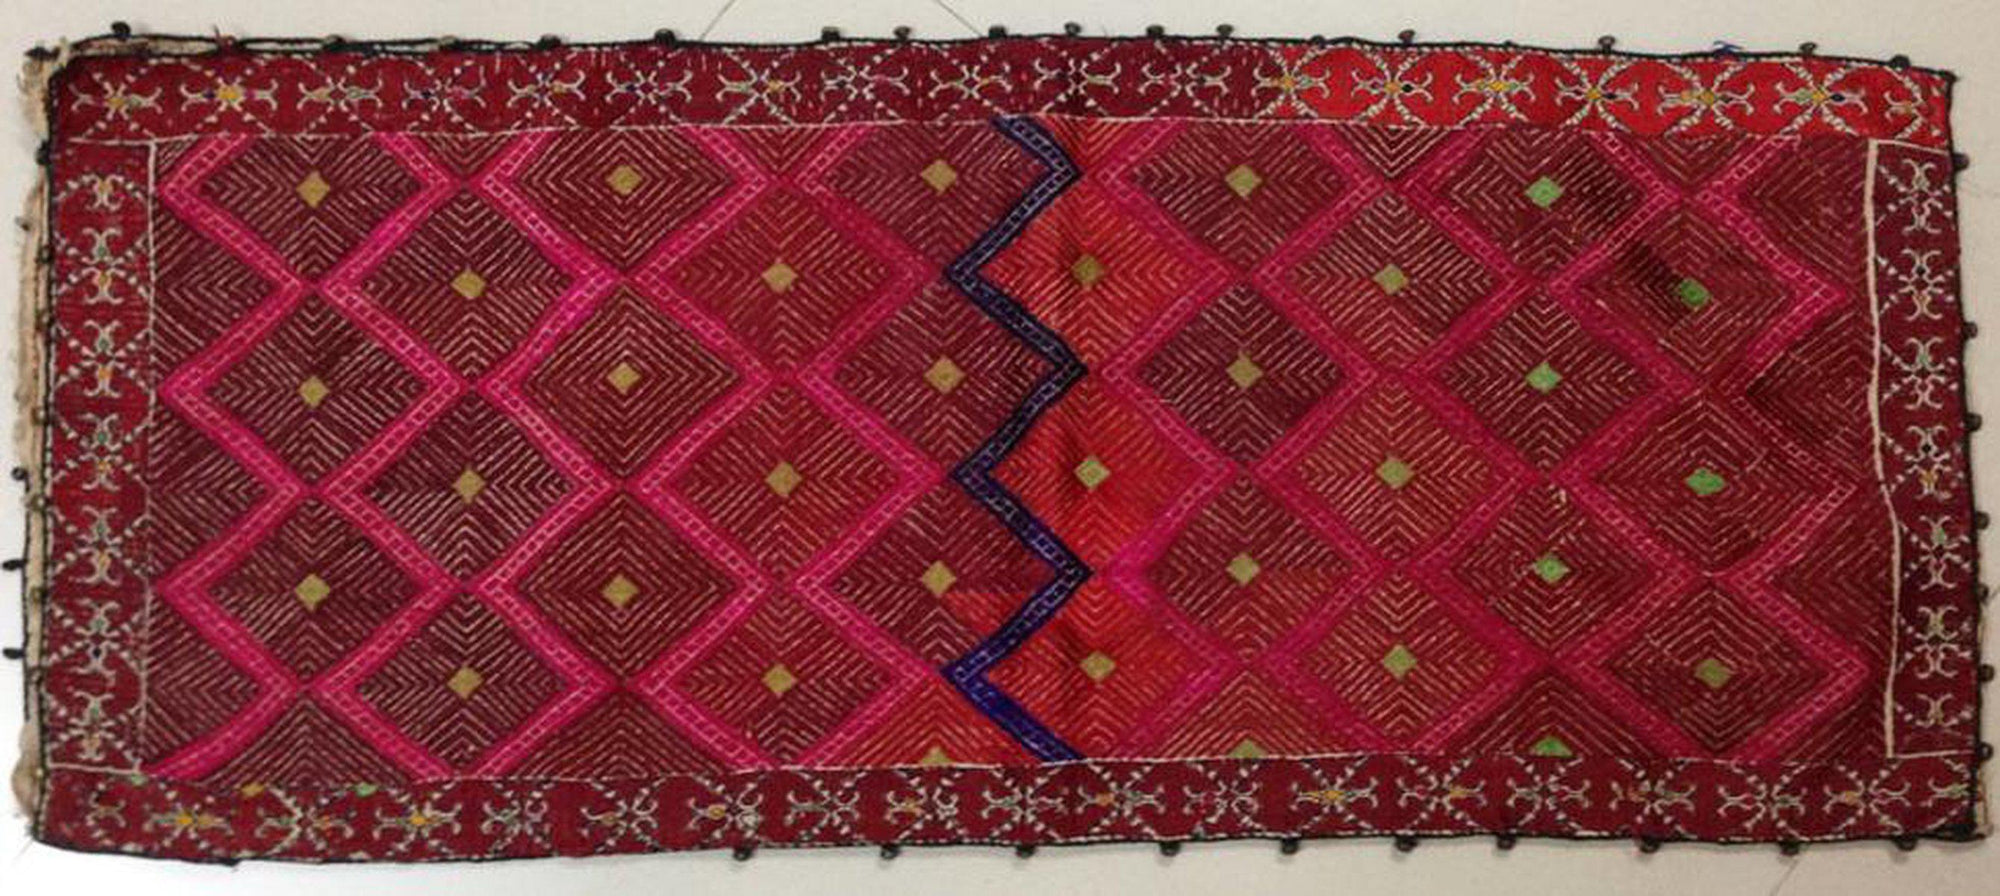 597 Antique Swat Valley Textile Art Embroidery Pillow Case-WOVENSOULS-Antique-Vintage-Textiles-Art-Decor